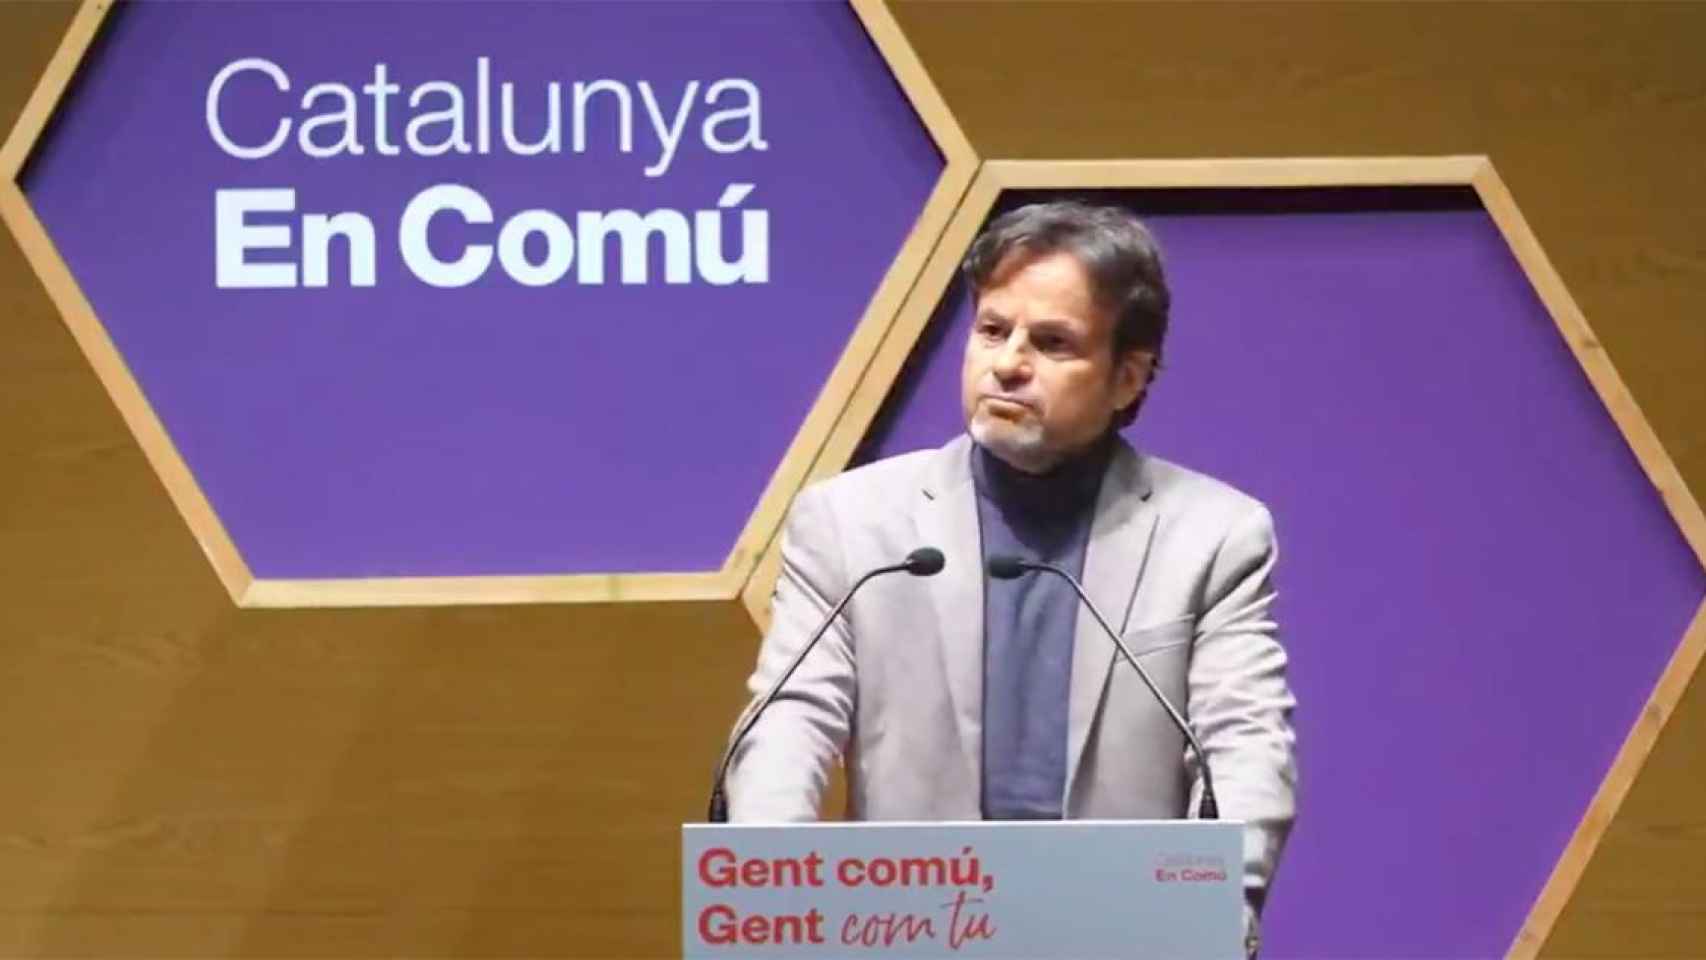 Jaume Asens interviene ante el consejo nacional de Catalunya en Comú, donde ha criticado al consejero de Educación, Josep Gonzàlez-Cambray